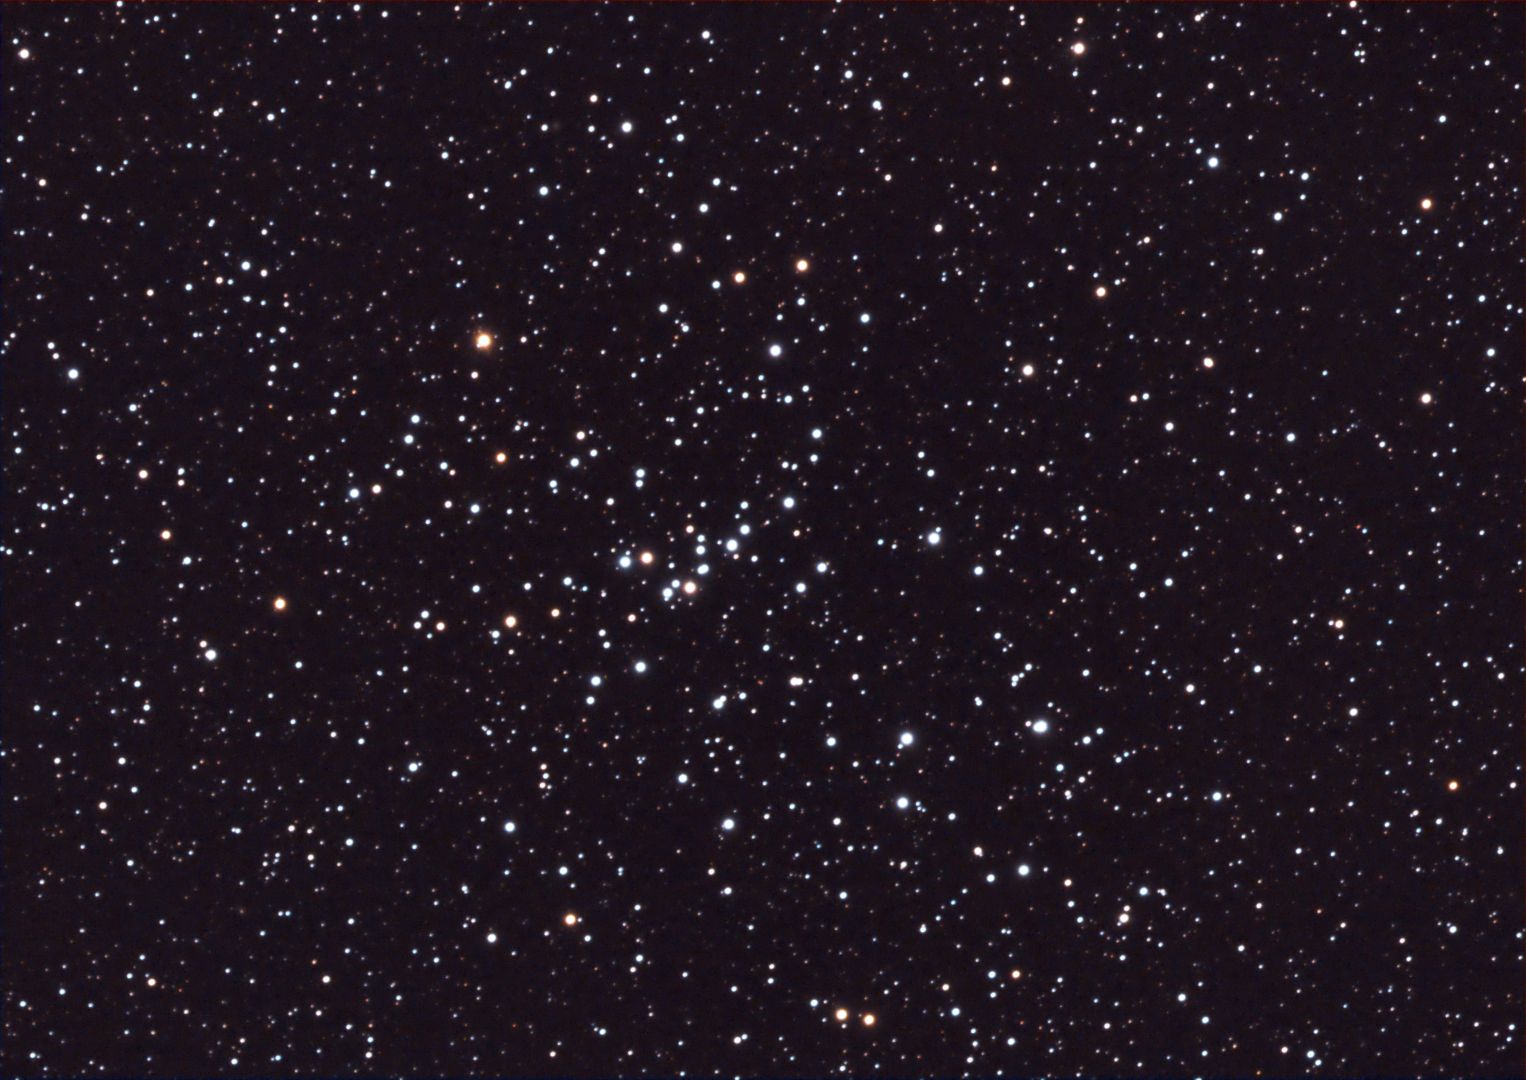 Messier 48